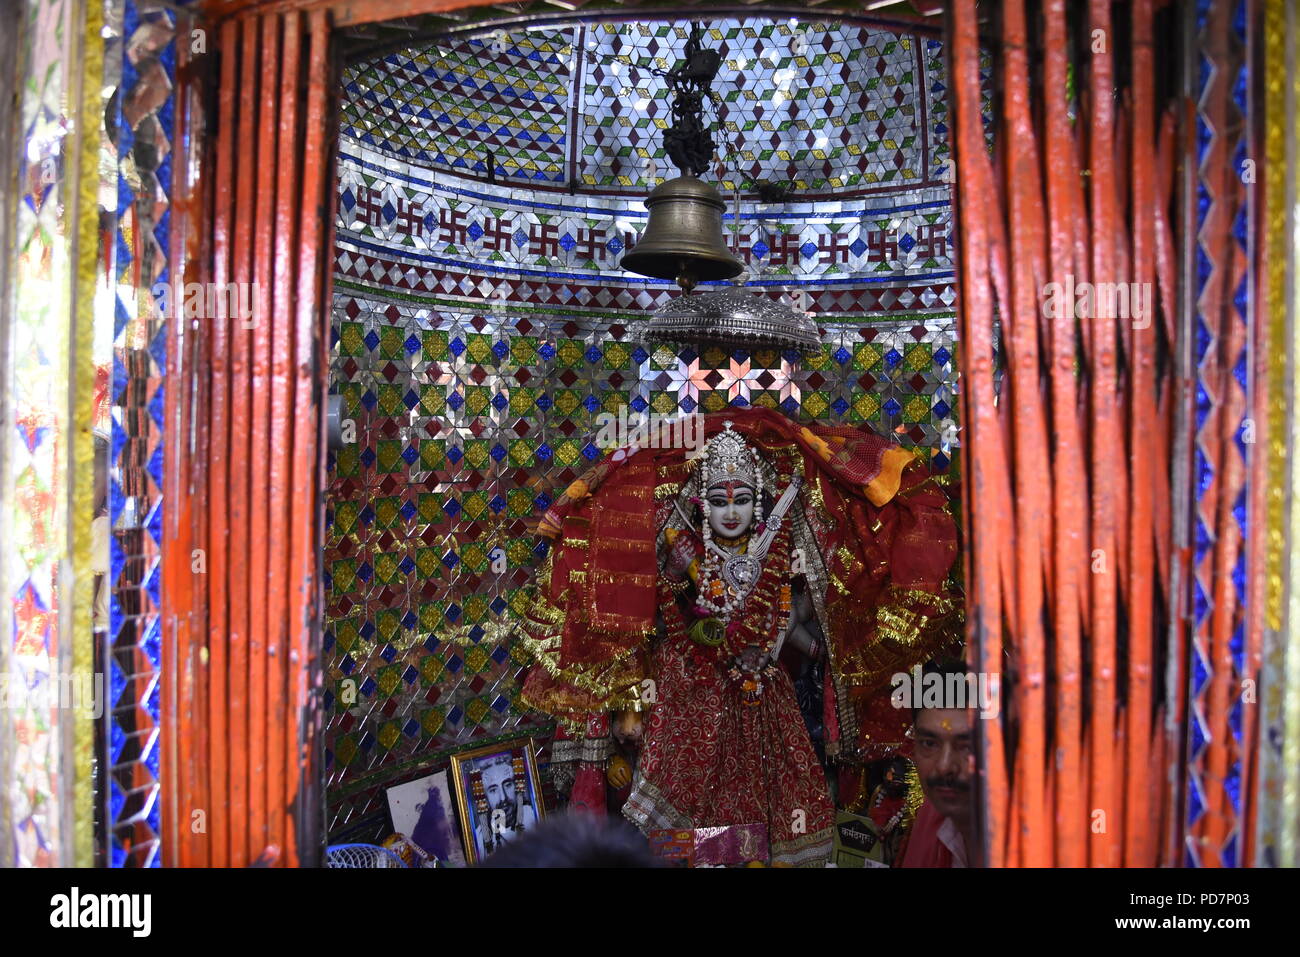 The statue of Garjiya Devi at Garjiya Devi Temple, Ramnagar located in the Garjiya village near Ramnagar, Uttarakhand, India Stock Photo